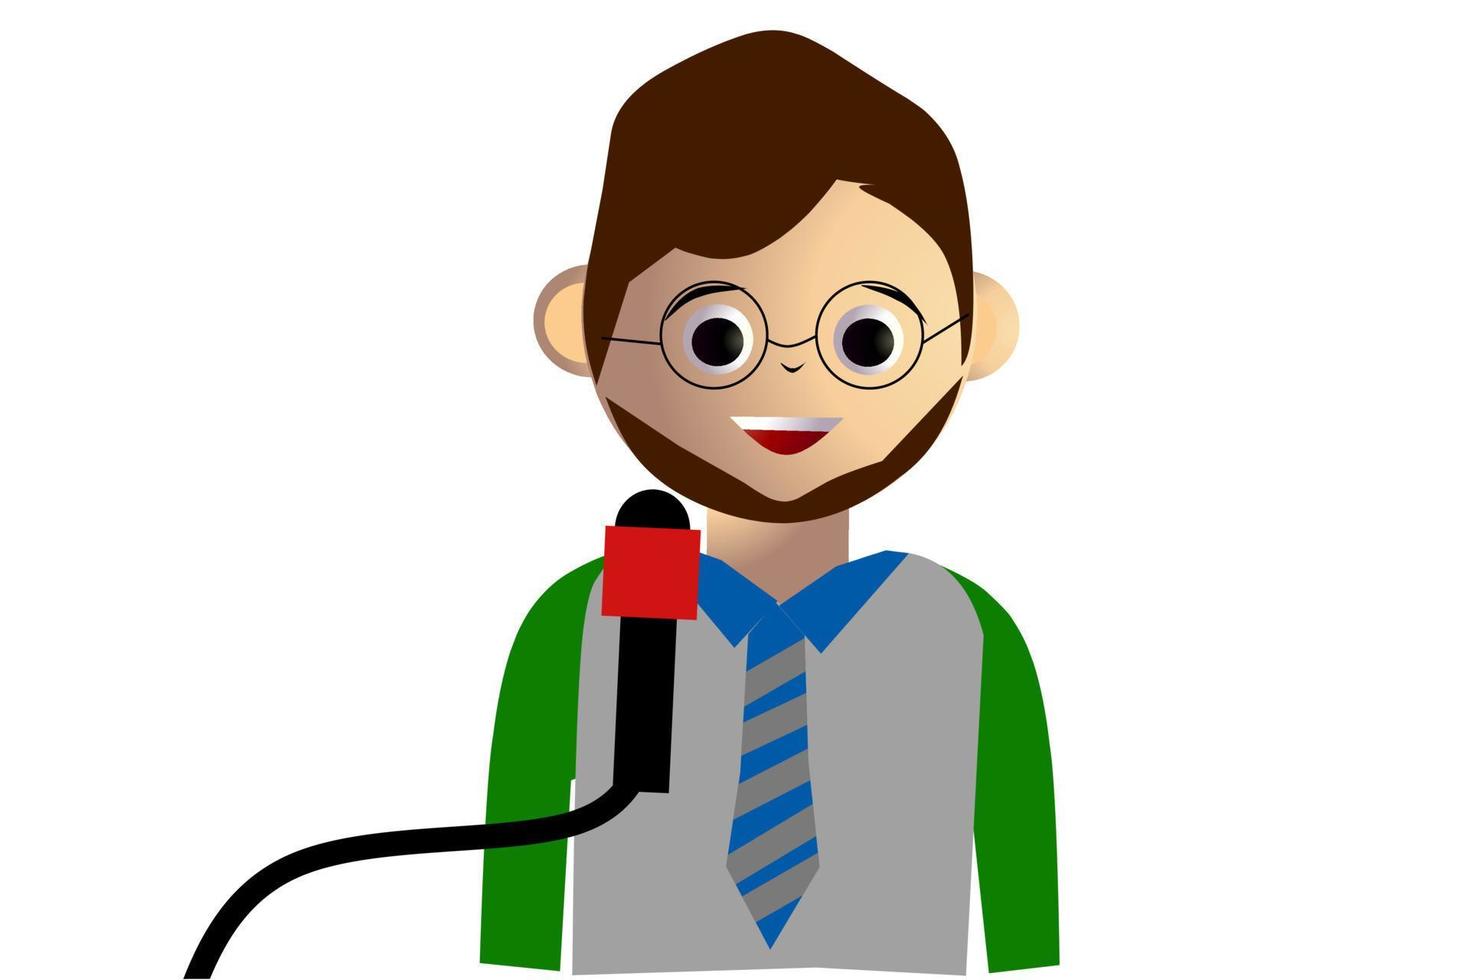 Journalist cartoon avatar isolated on white background. Vector illustration.